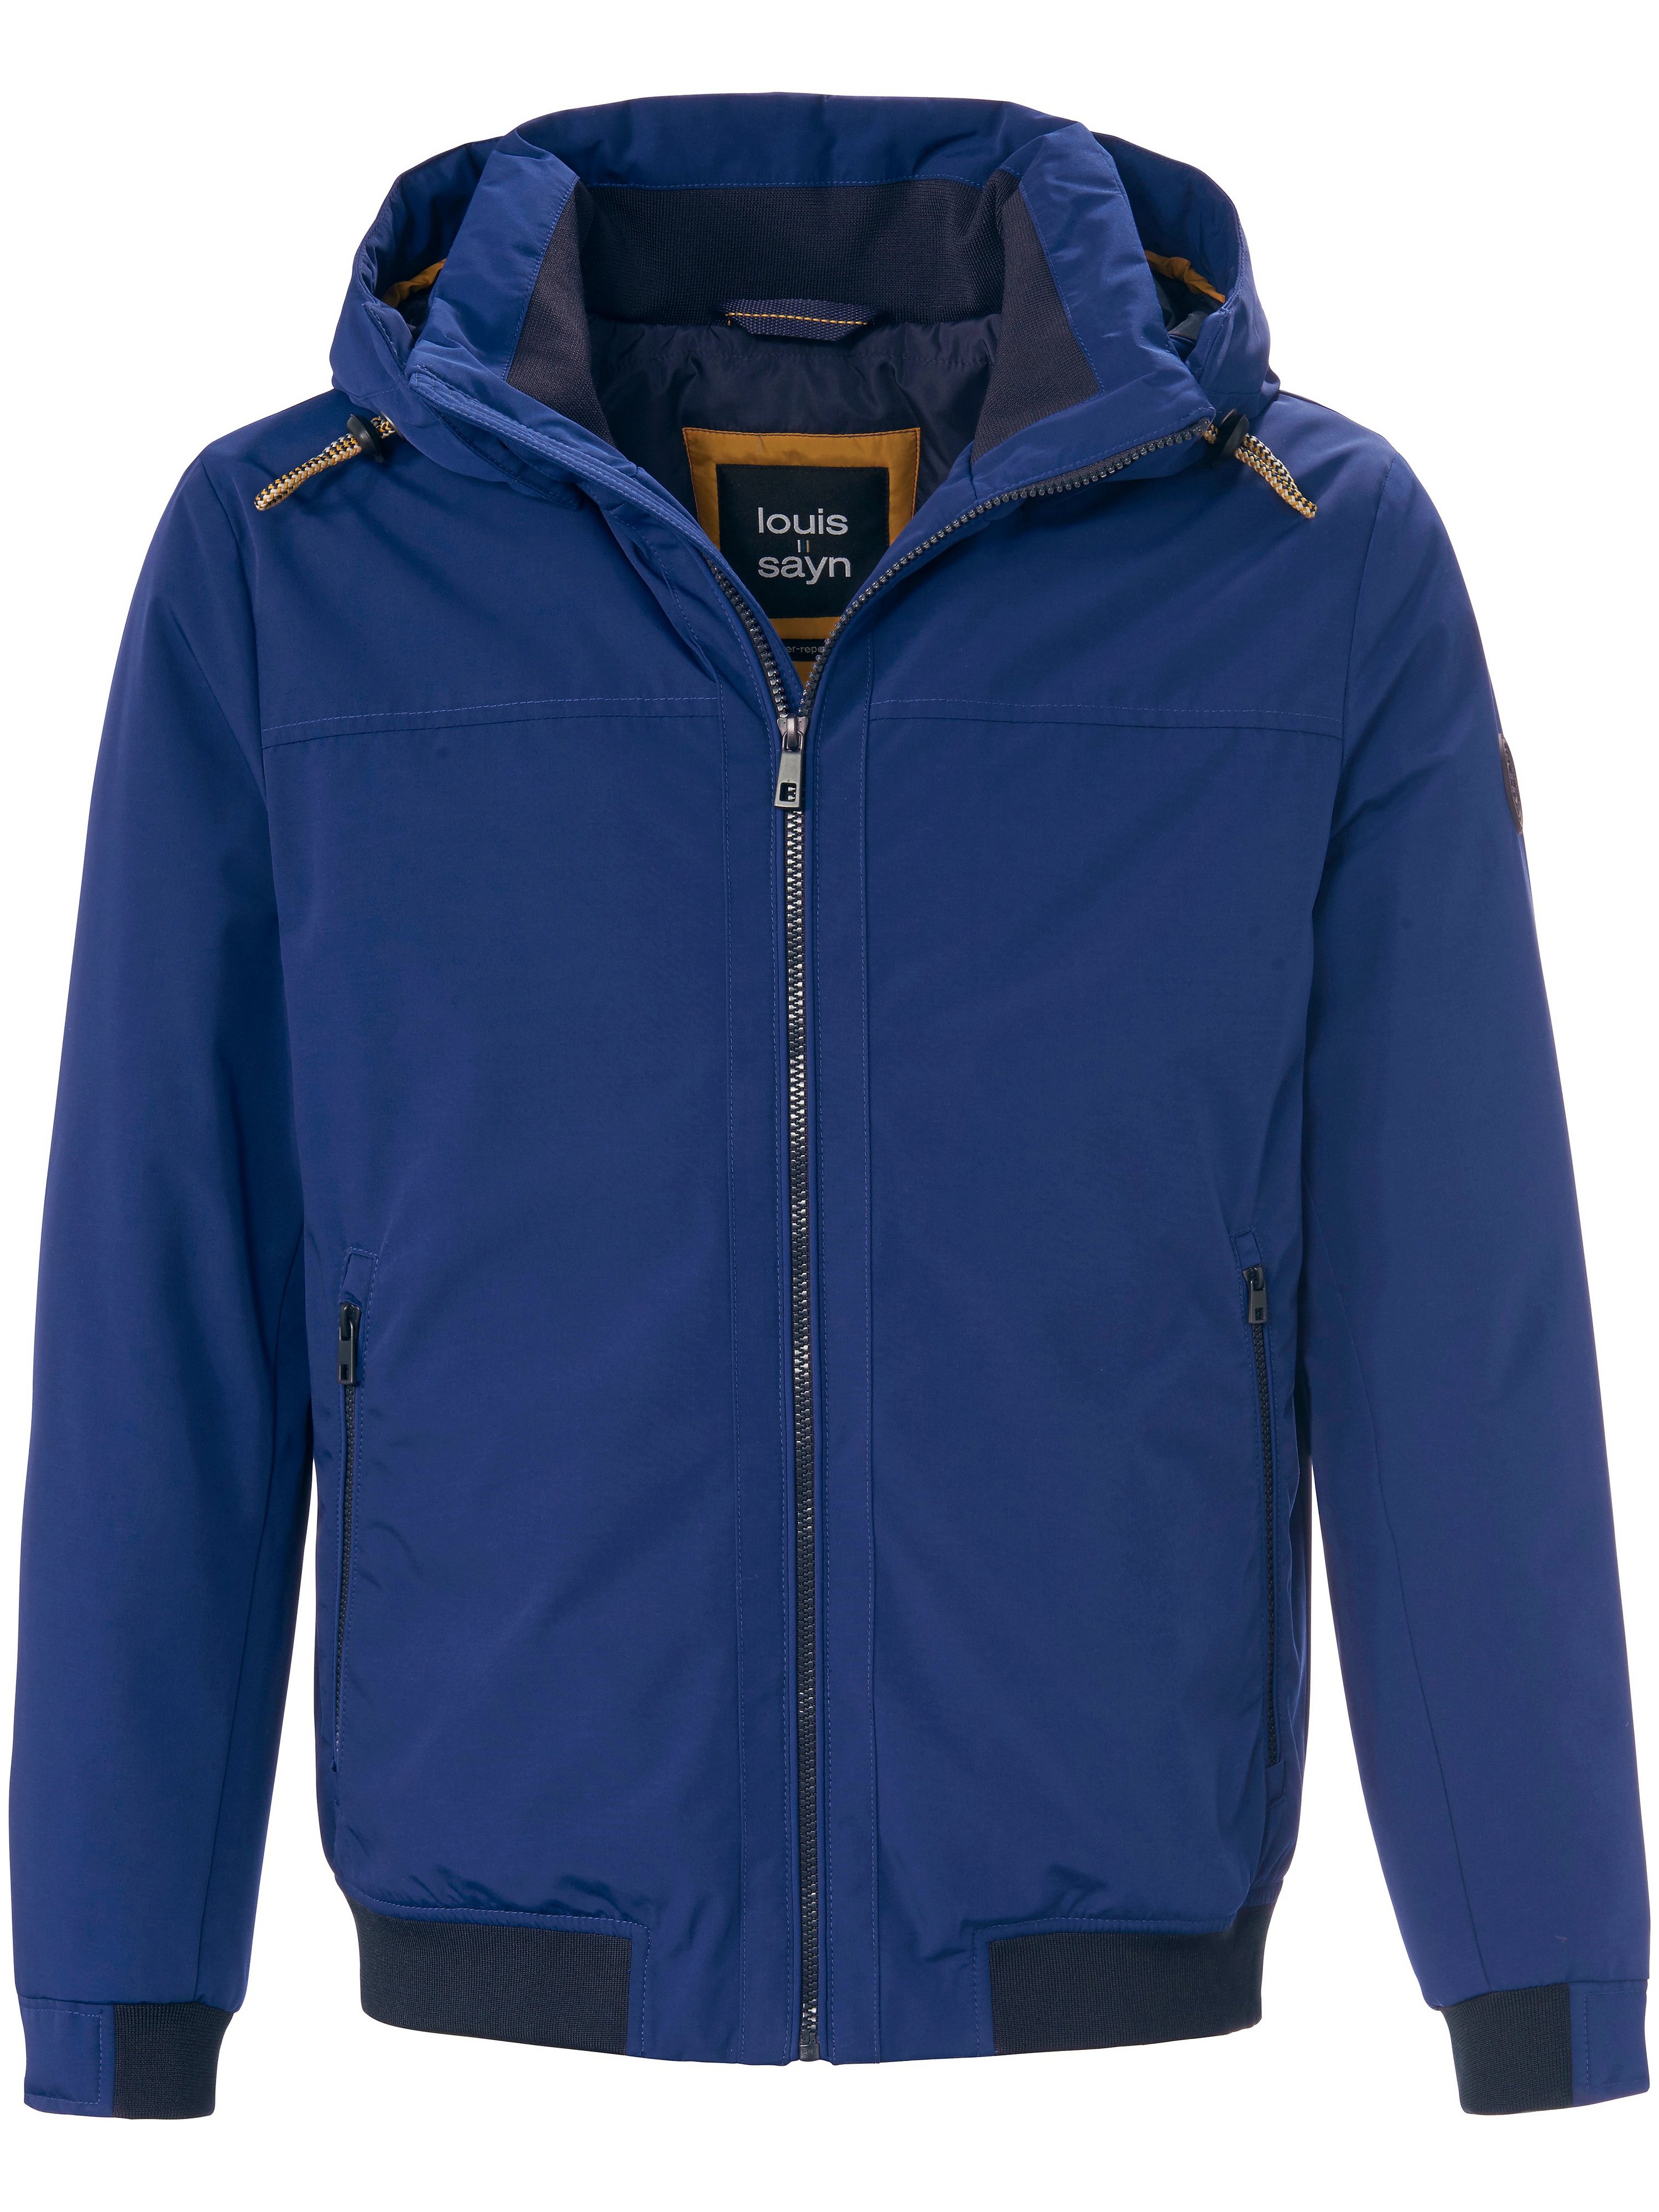 Blouson jacket detachable hood Louis Sayn blue